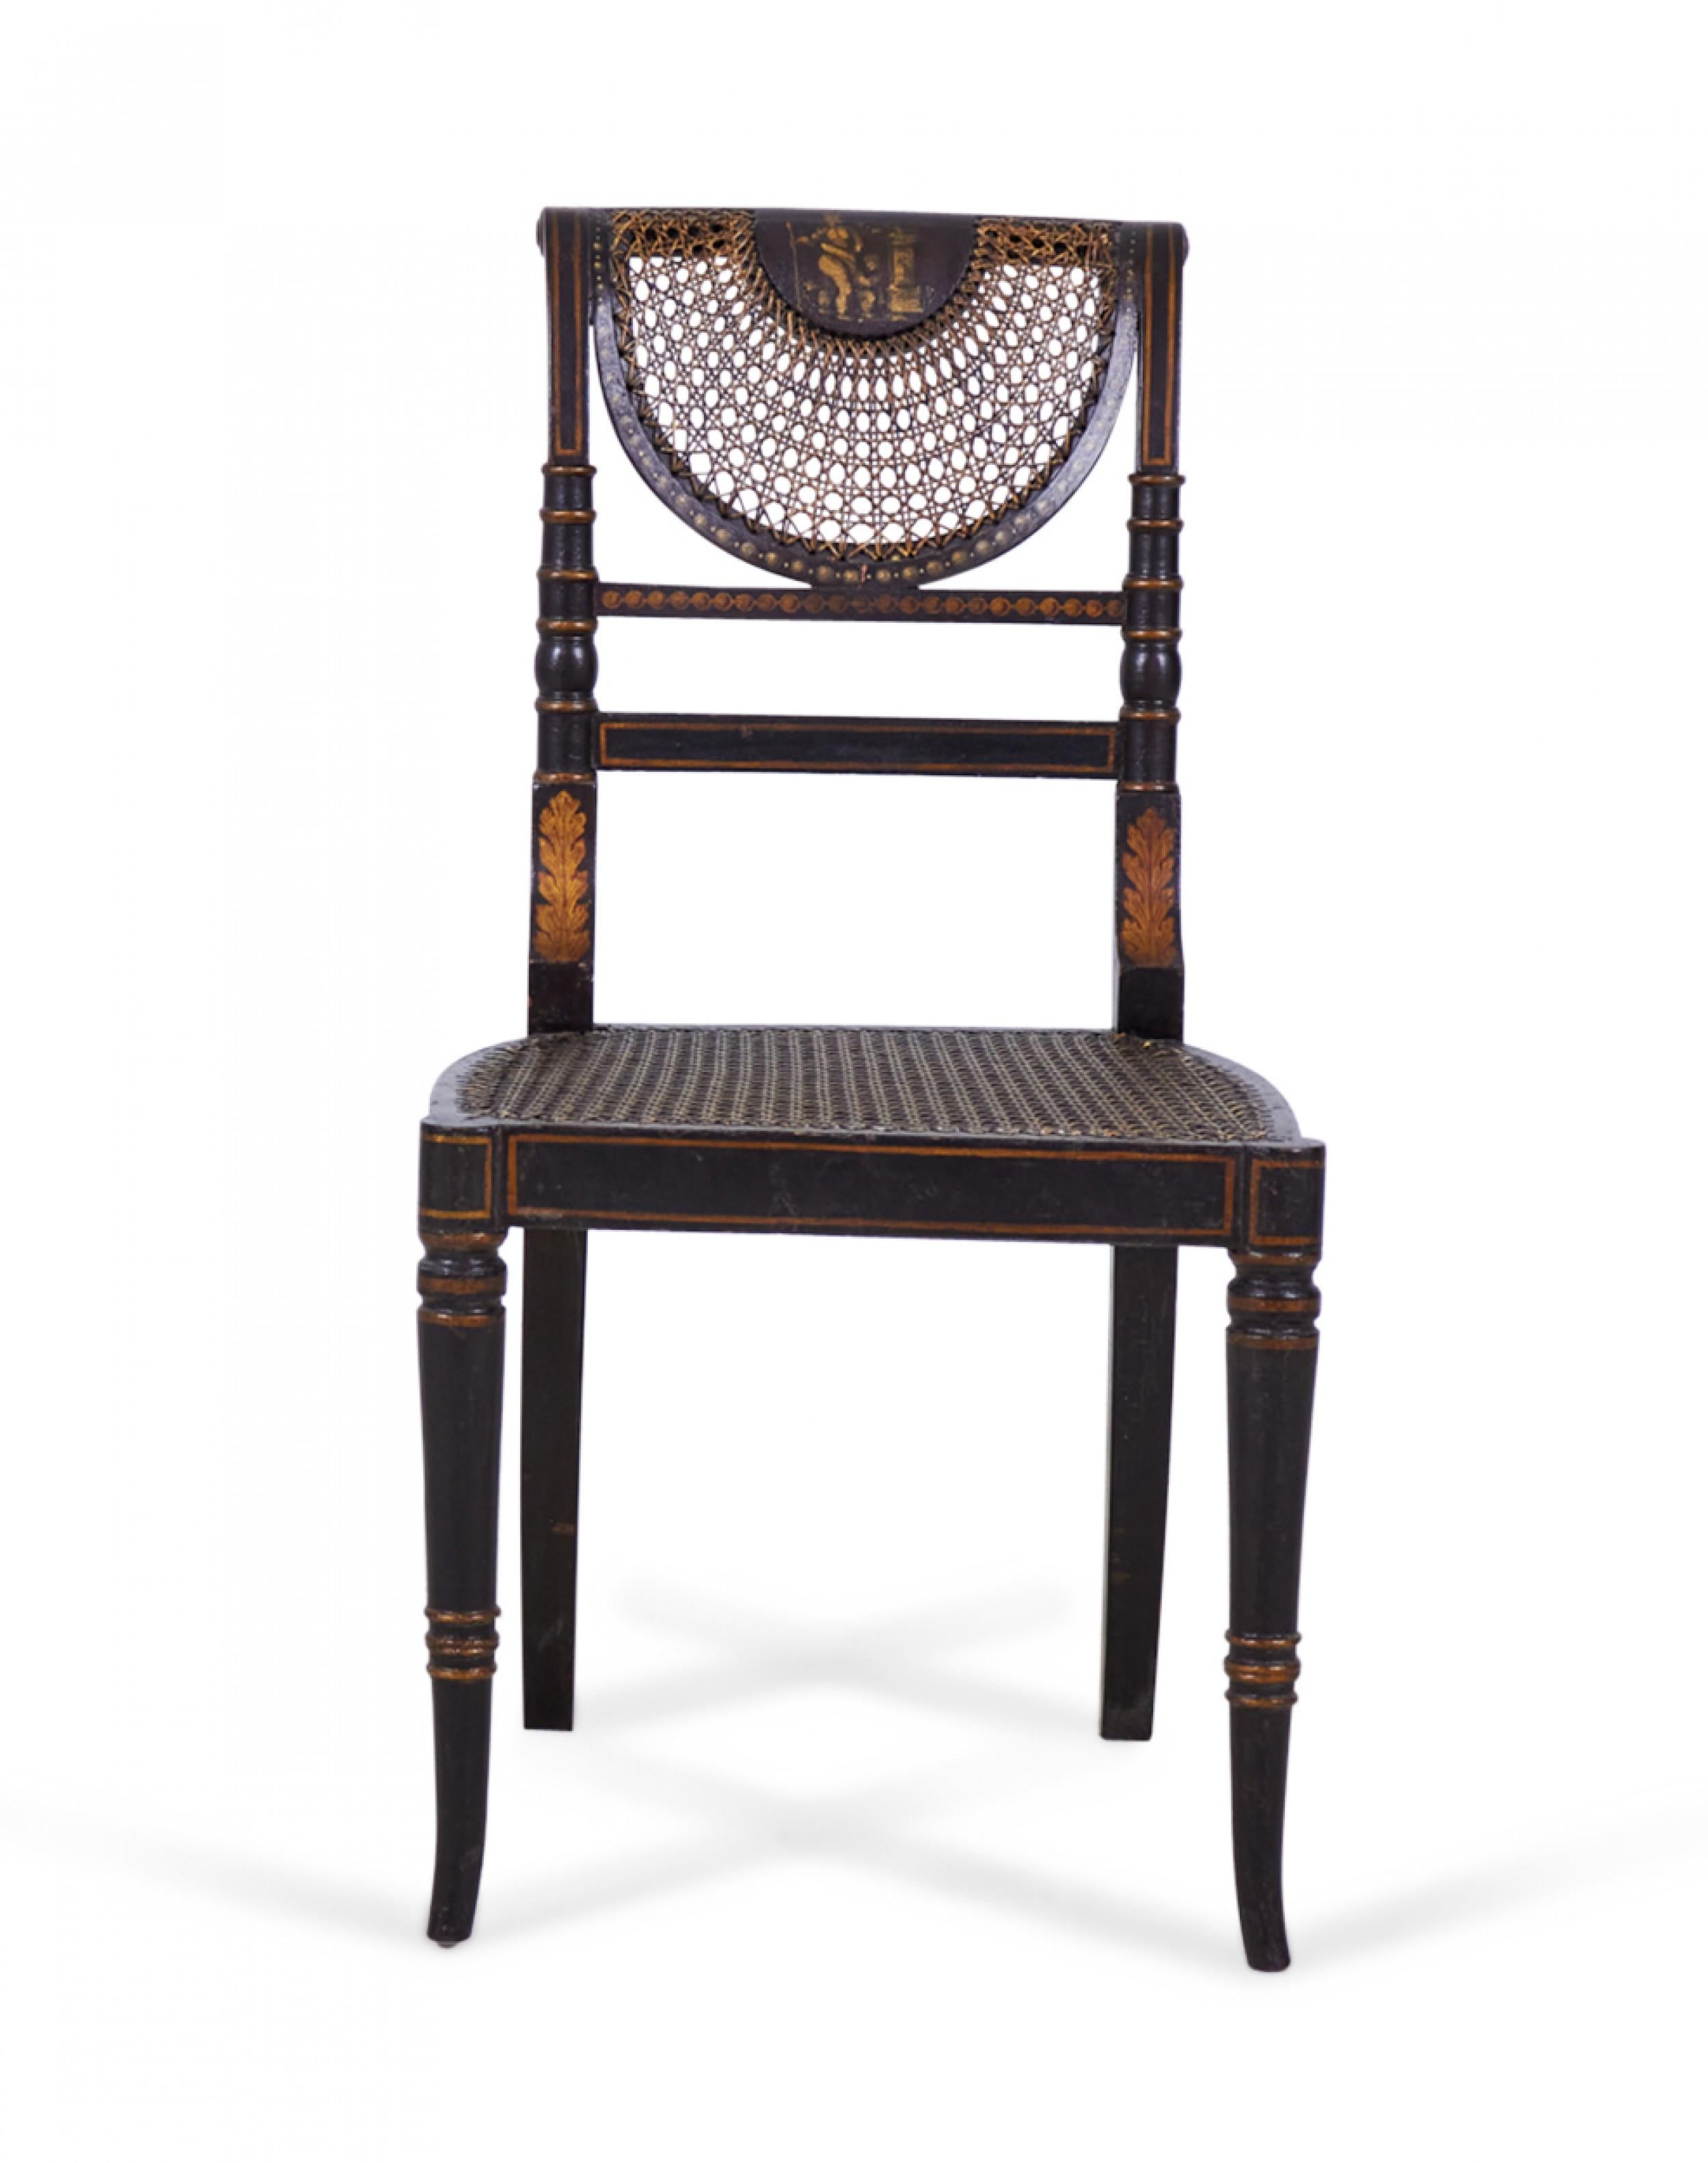 4 englische Regency-Stühle (19. Jh.) mit gedrechselten, schwarz und gold lackierten Gestellen, Sitzflächen aus Rohrgeflecht und fächerförmiger Rückenlehne.